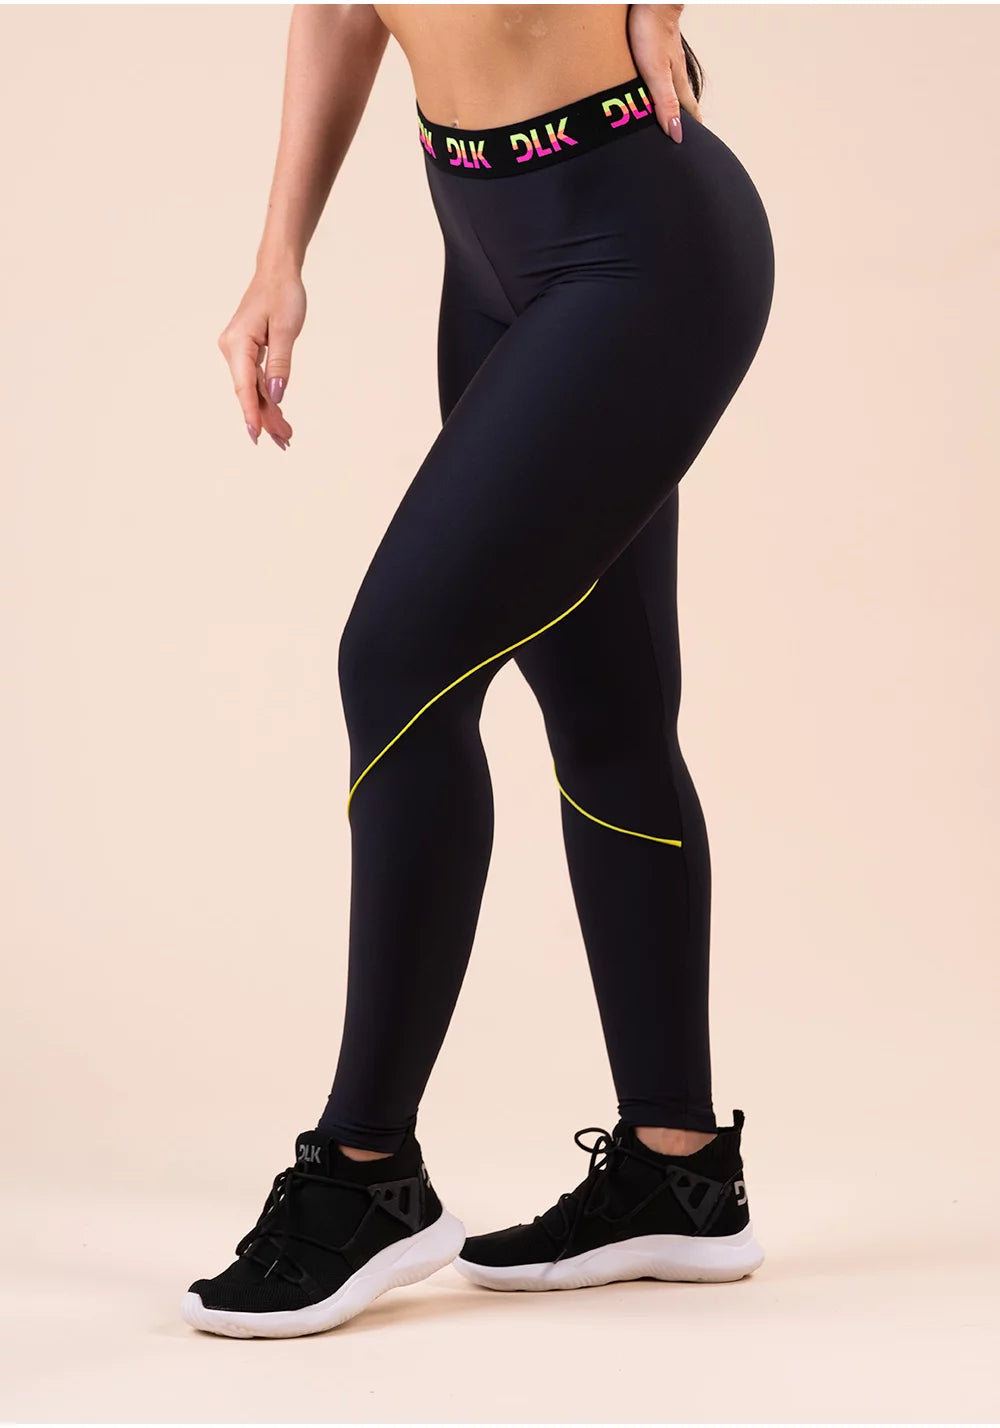 Calça Legging Fitness Feminina Alta Compressão Texturizada